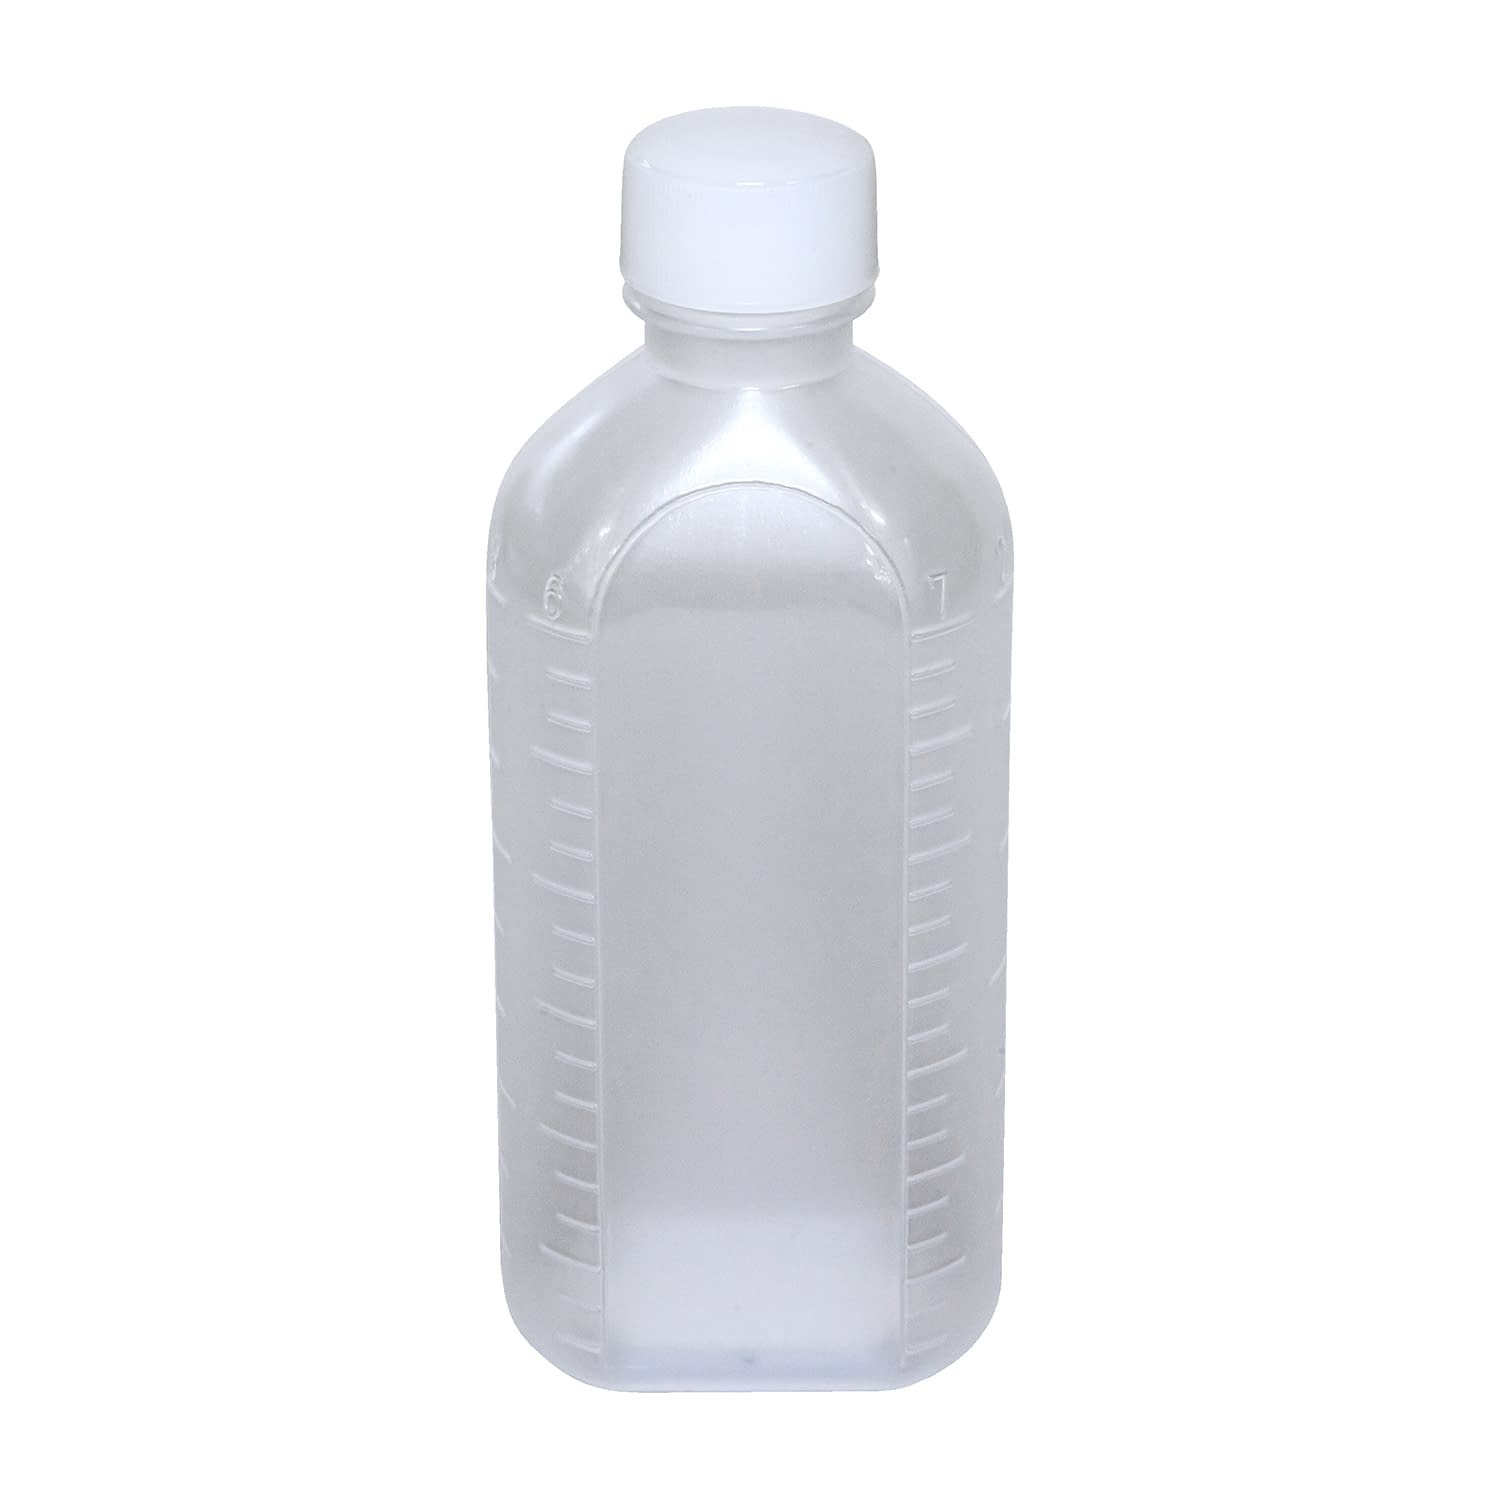 投薬瓶ＰＰＢ（滅菌済） 150CC(5ﾎﾝX30ﾌｸﾛｲﾘ) キャップ：白ＰＰ150cc白・PP【エムアイケミカル】FALSE(08-2855-04-06)